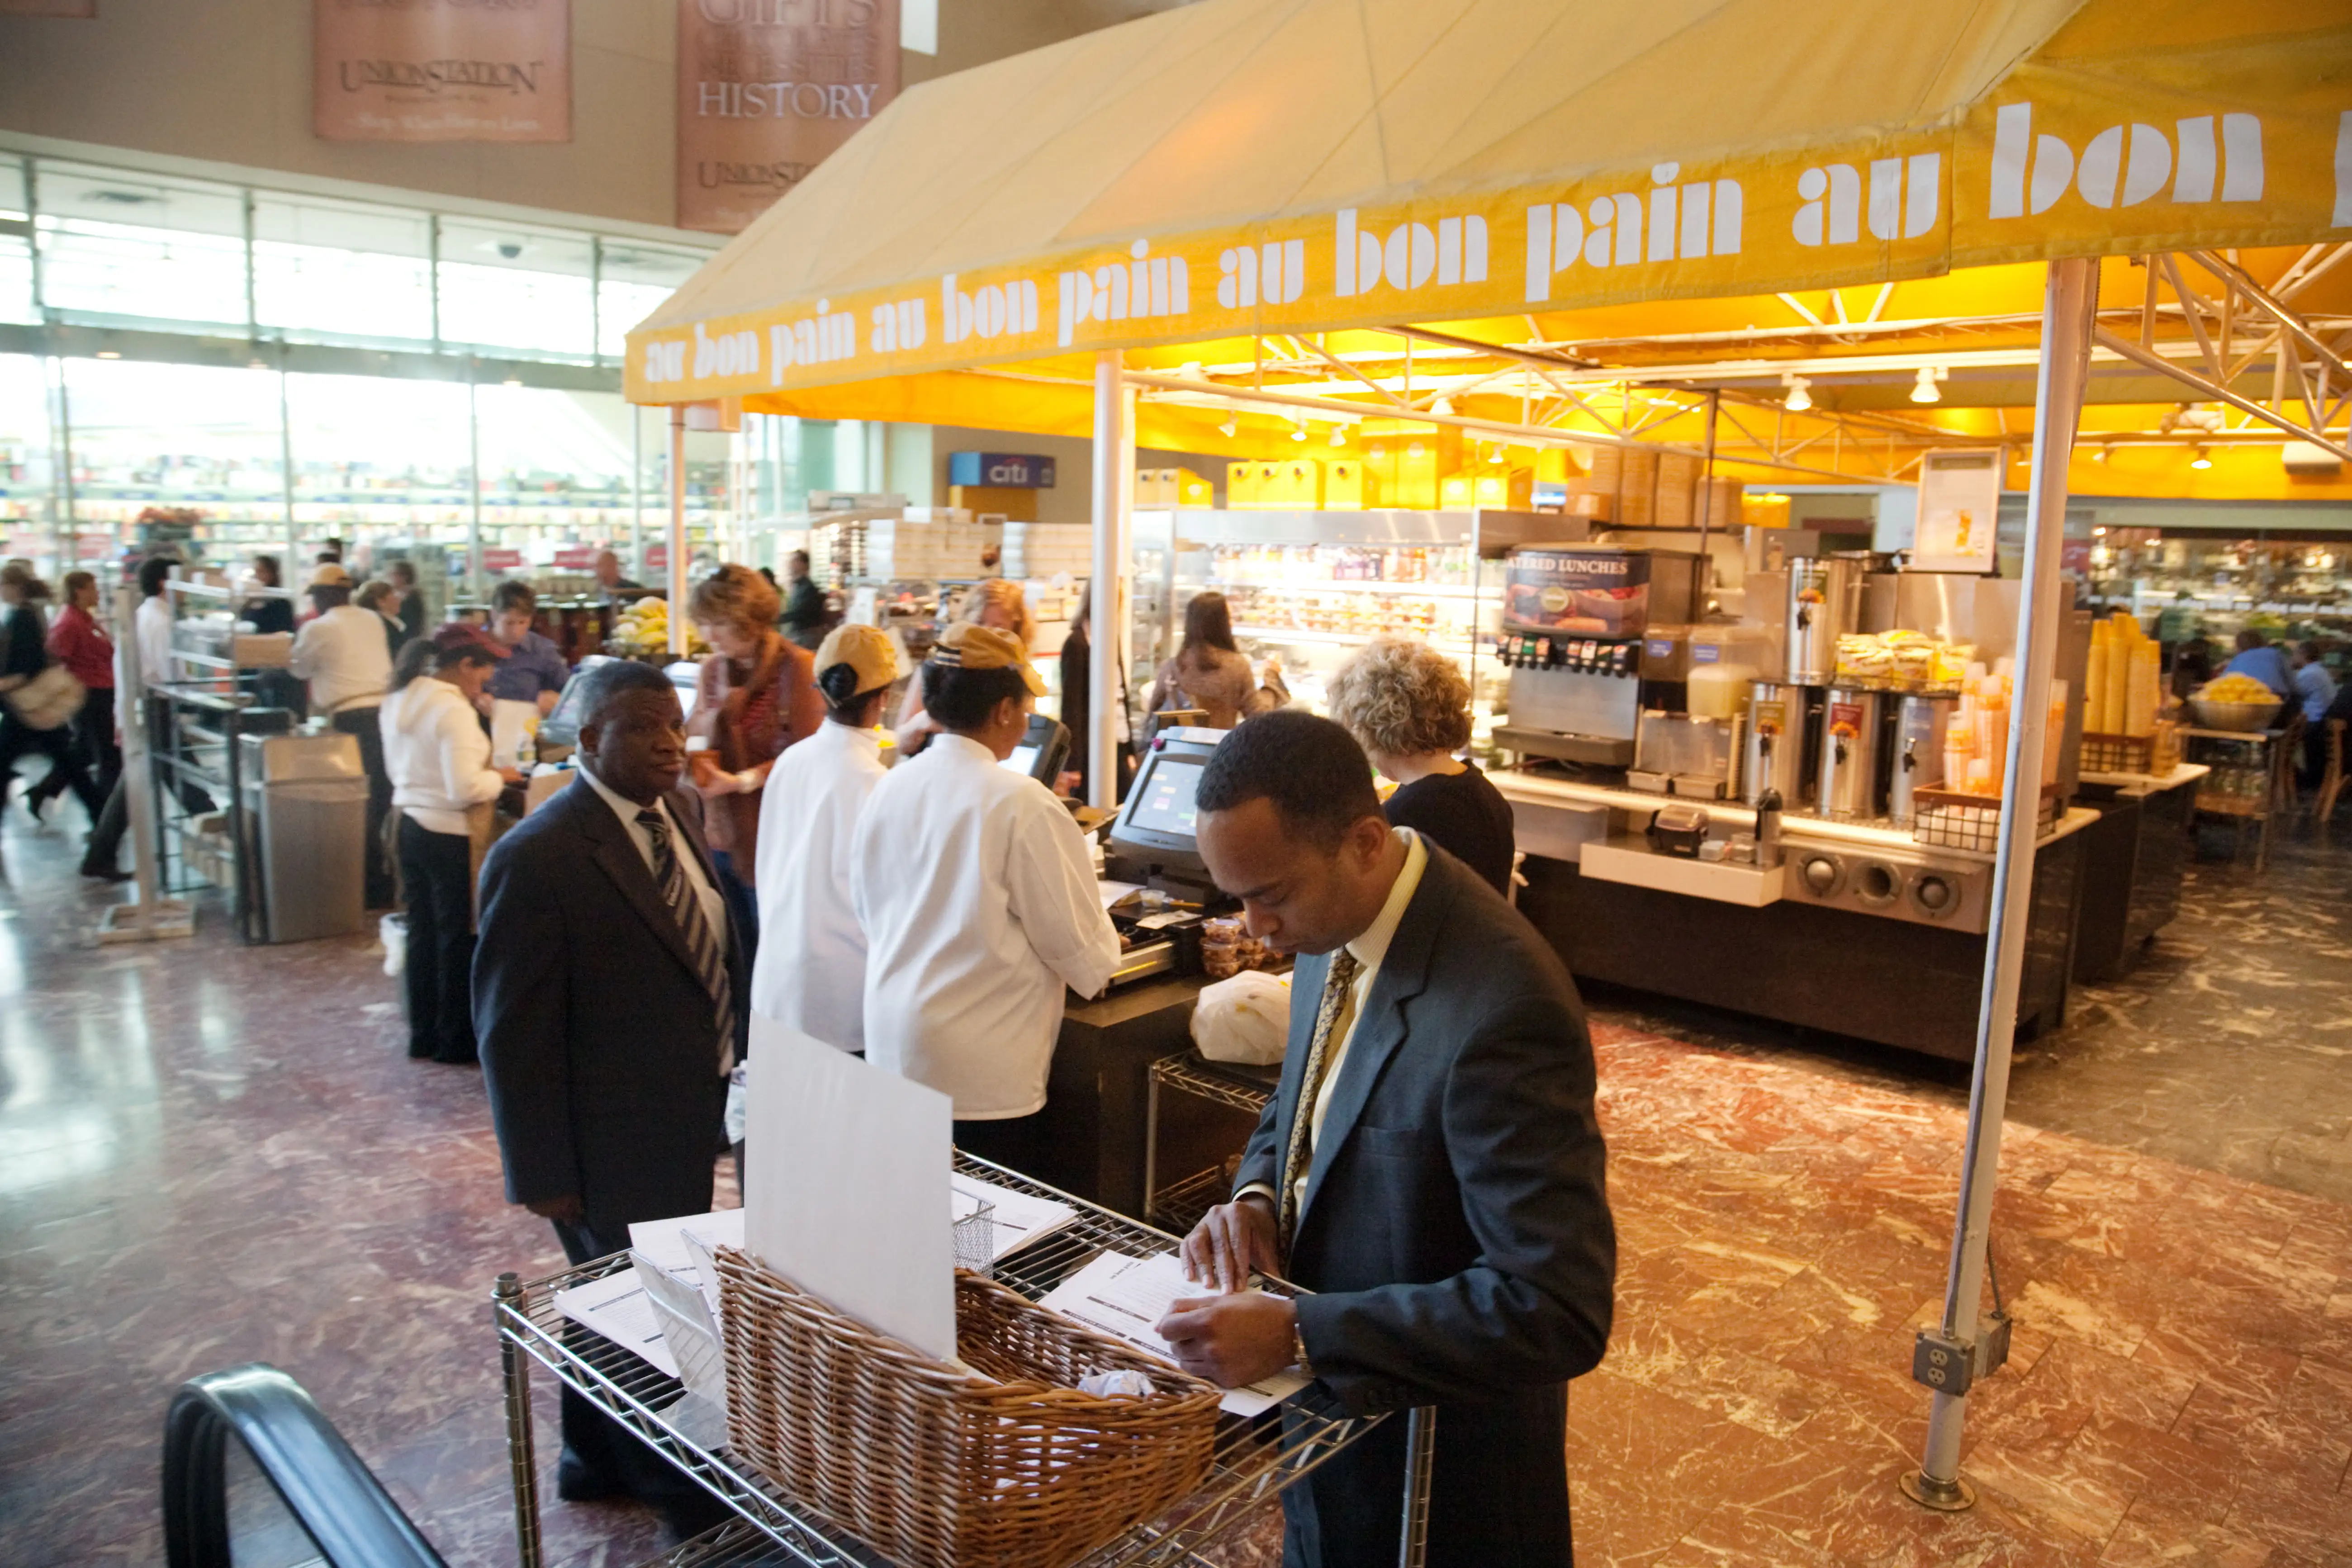 People buying food at Au Bon Pain restaurant / cafe , Union Station, Washington DC USA